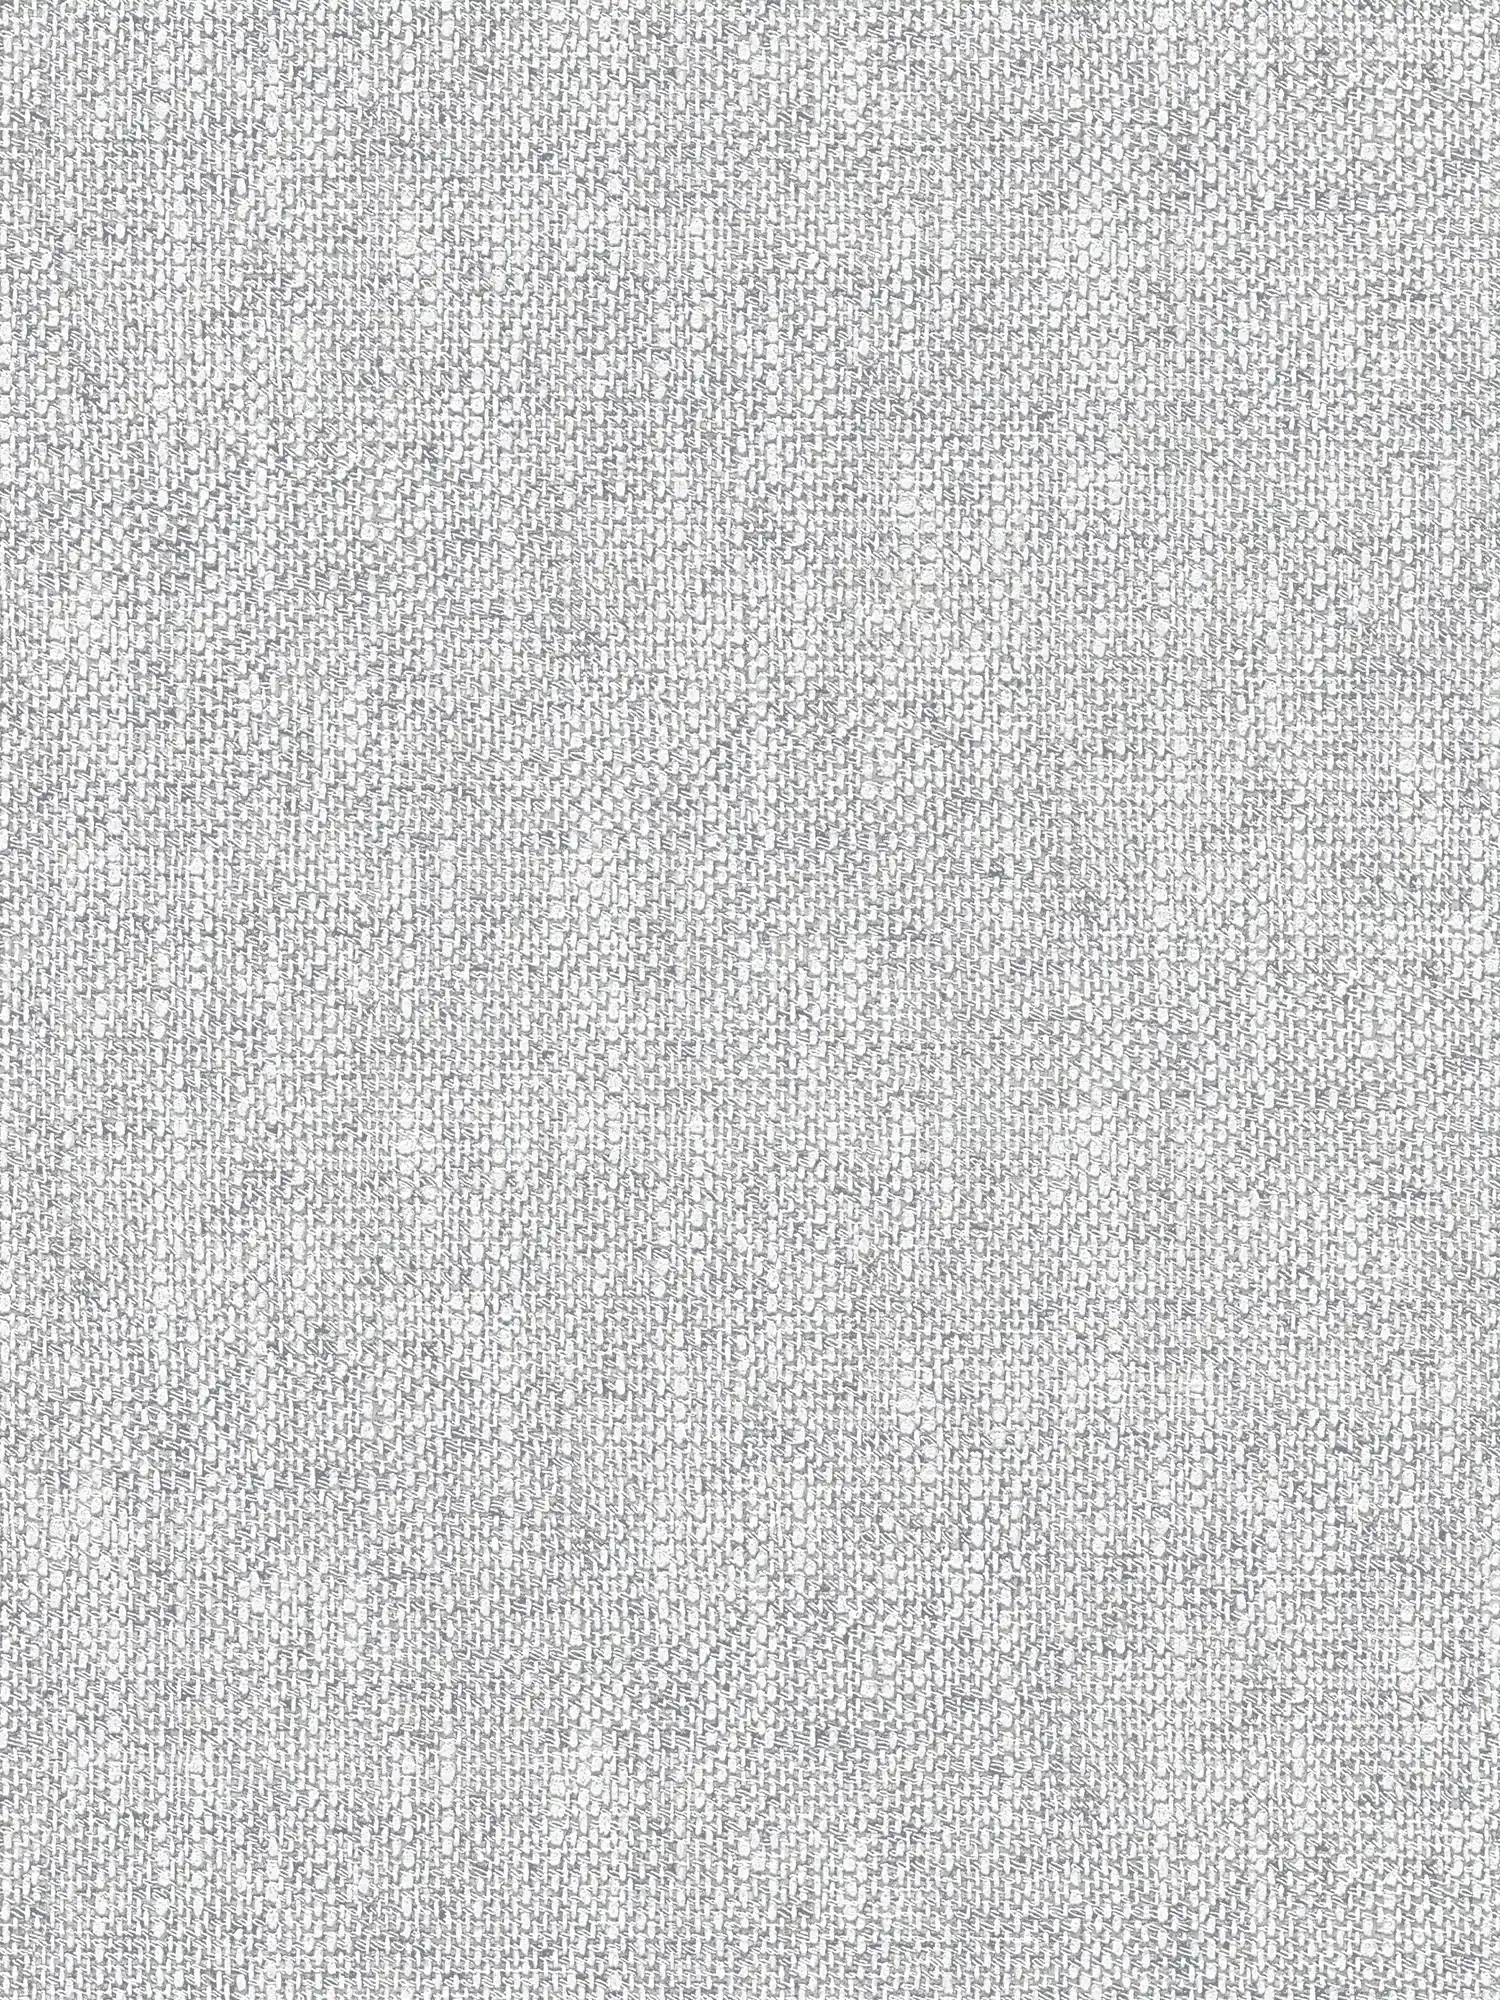 Vliesbehang met realistische stofuitstraling - grijs, wit
